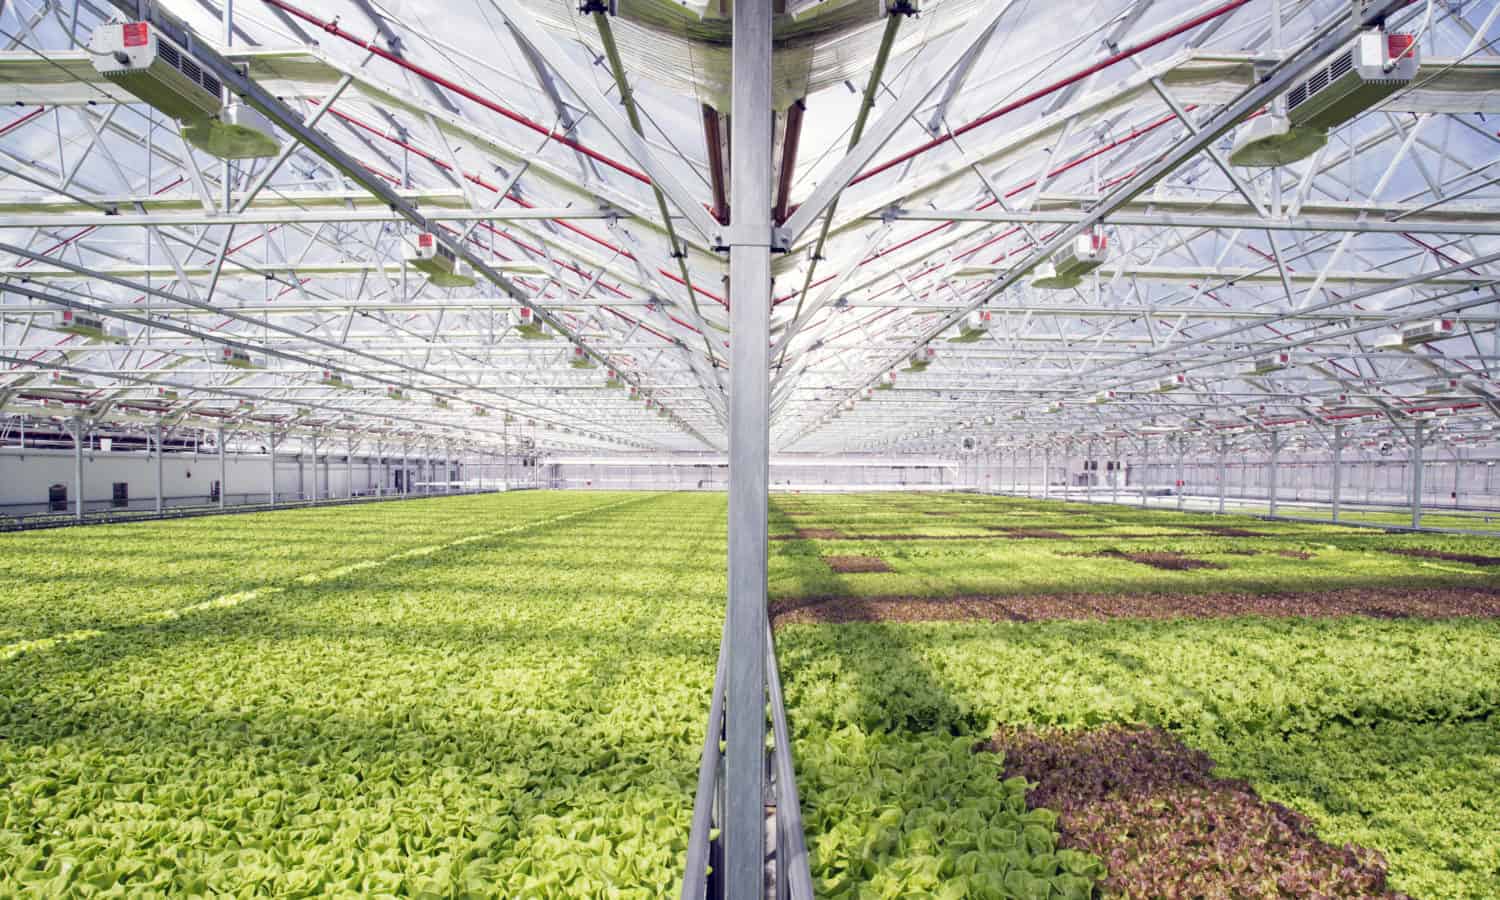 第一个商业城市温室,Gotham Greens,巴尔的摩。新的100000平方英尺温室将给城市带来新鲜蔬菜和新的就业机会。